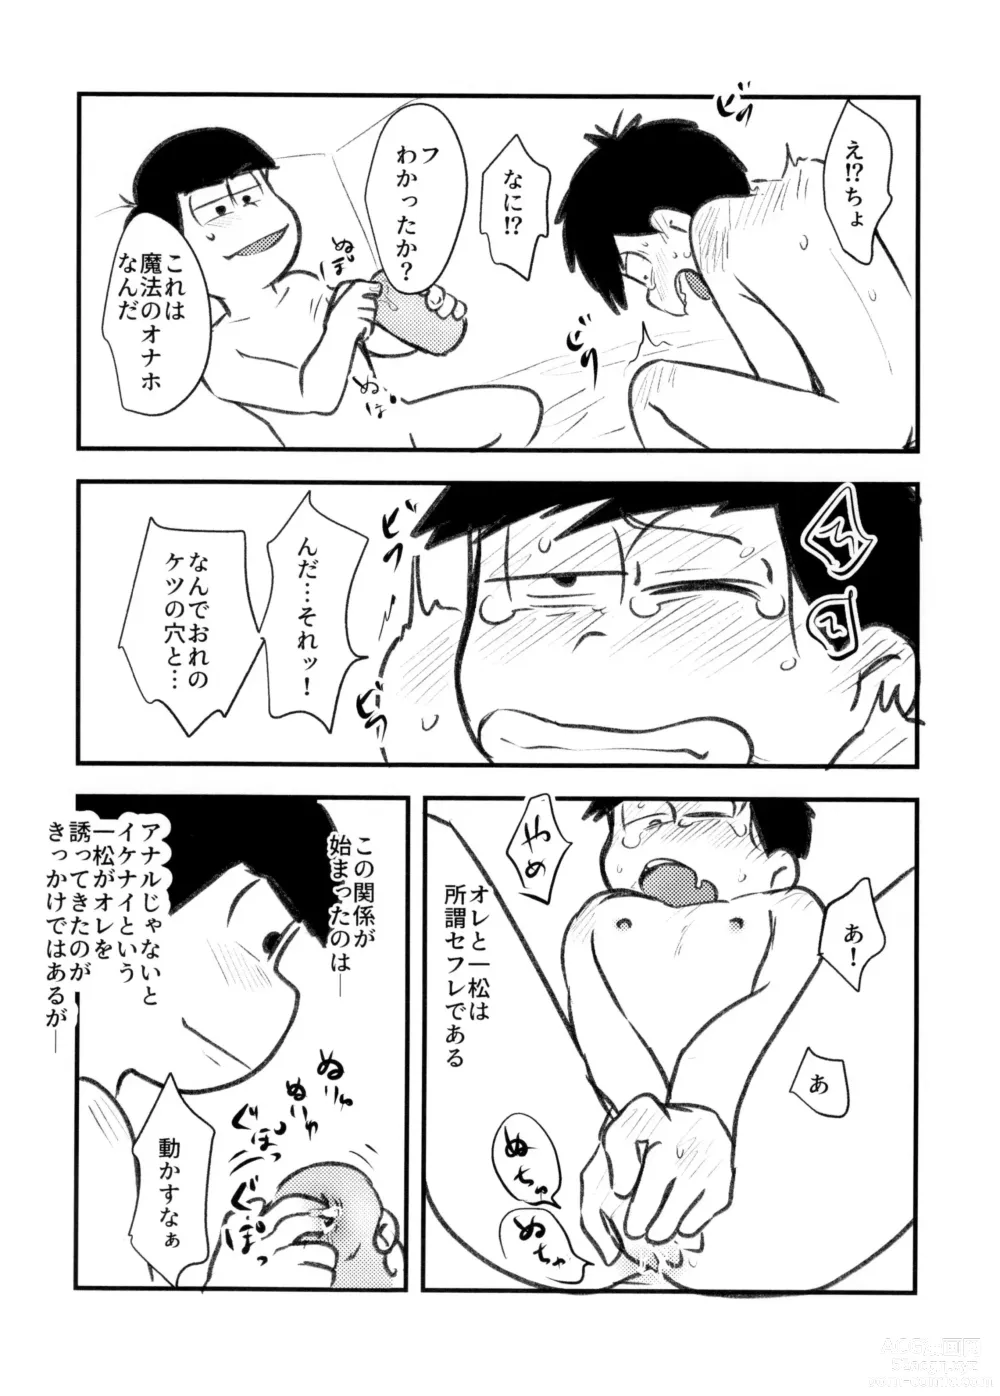 Page 6 of doujinshi Guchuguchu Nuchinuchu Mahou no Doppyun Onaho de Sotsugyou